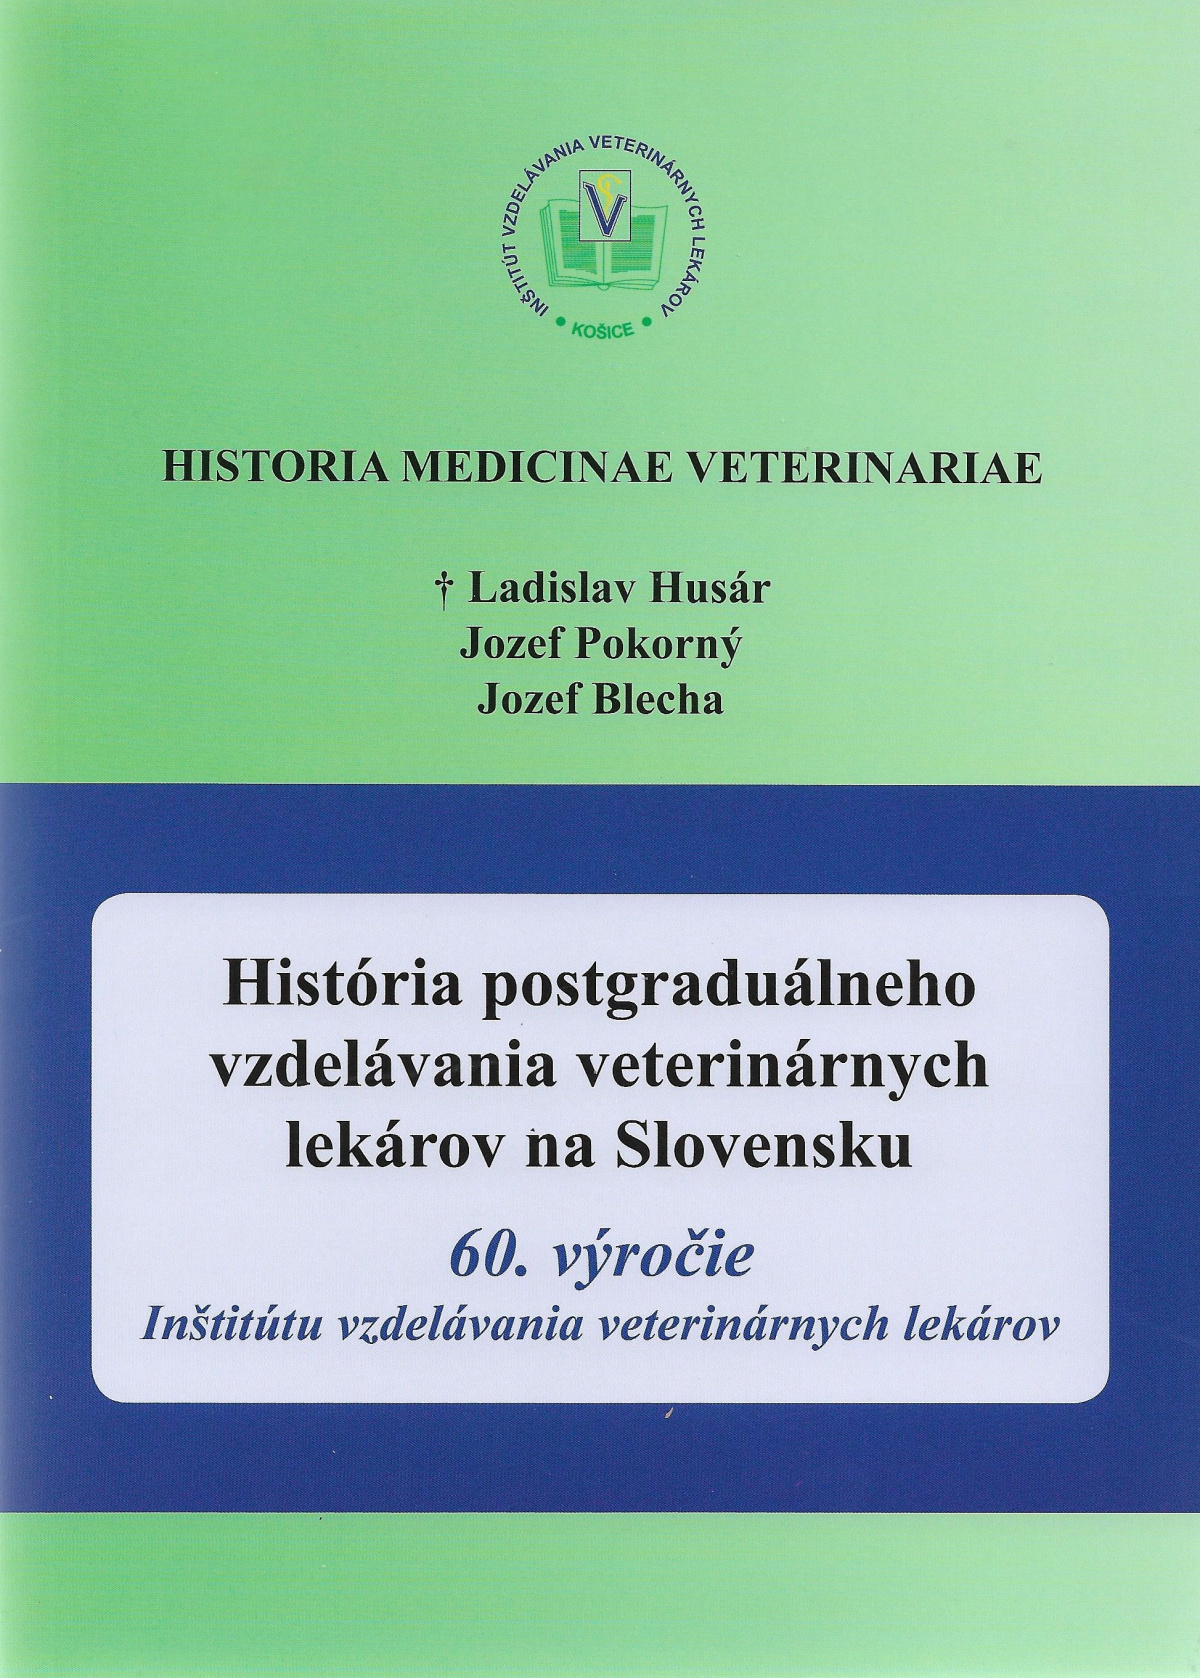 L.Husár, J.Pokorný, J.Blecha, História postgraduálneho vzdelávania veterinárnych lekárov na Slovensku